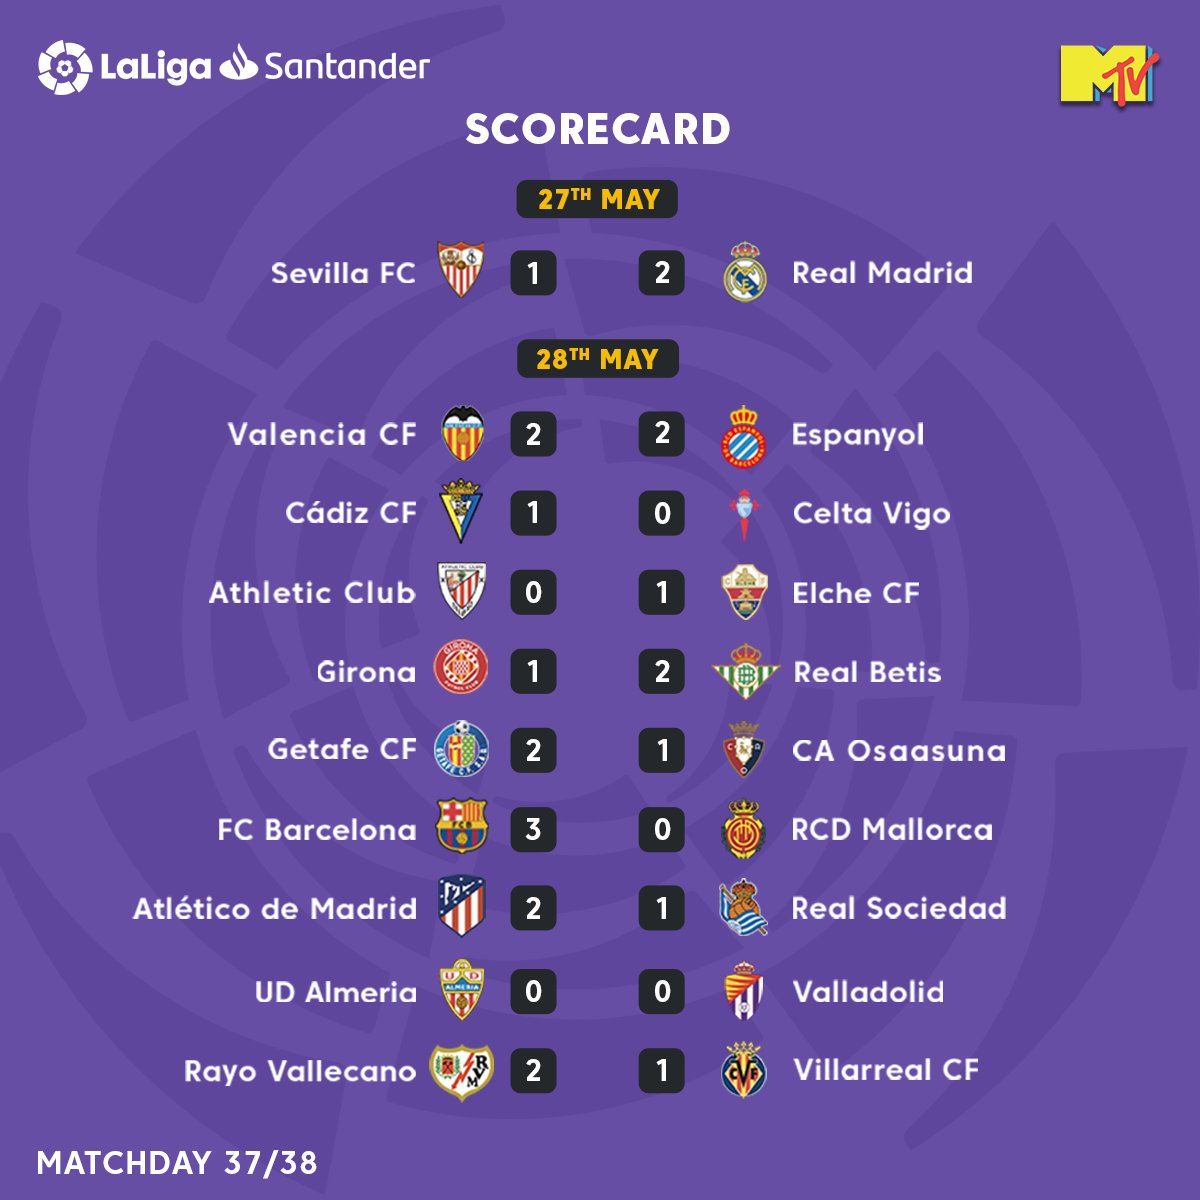 A round of 👏 to all the winning teams, in matchday 37! 

#LaLigaSantander #LaLigaOnMTV #KickoffLaLigaSantander #Scorecard #LaLigaFam